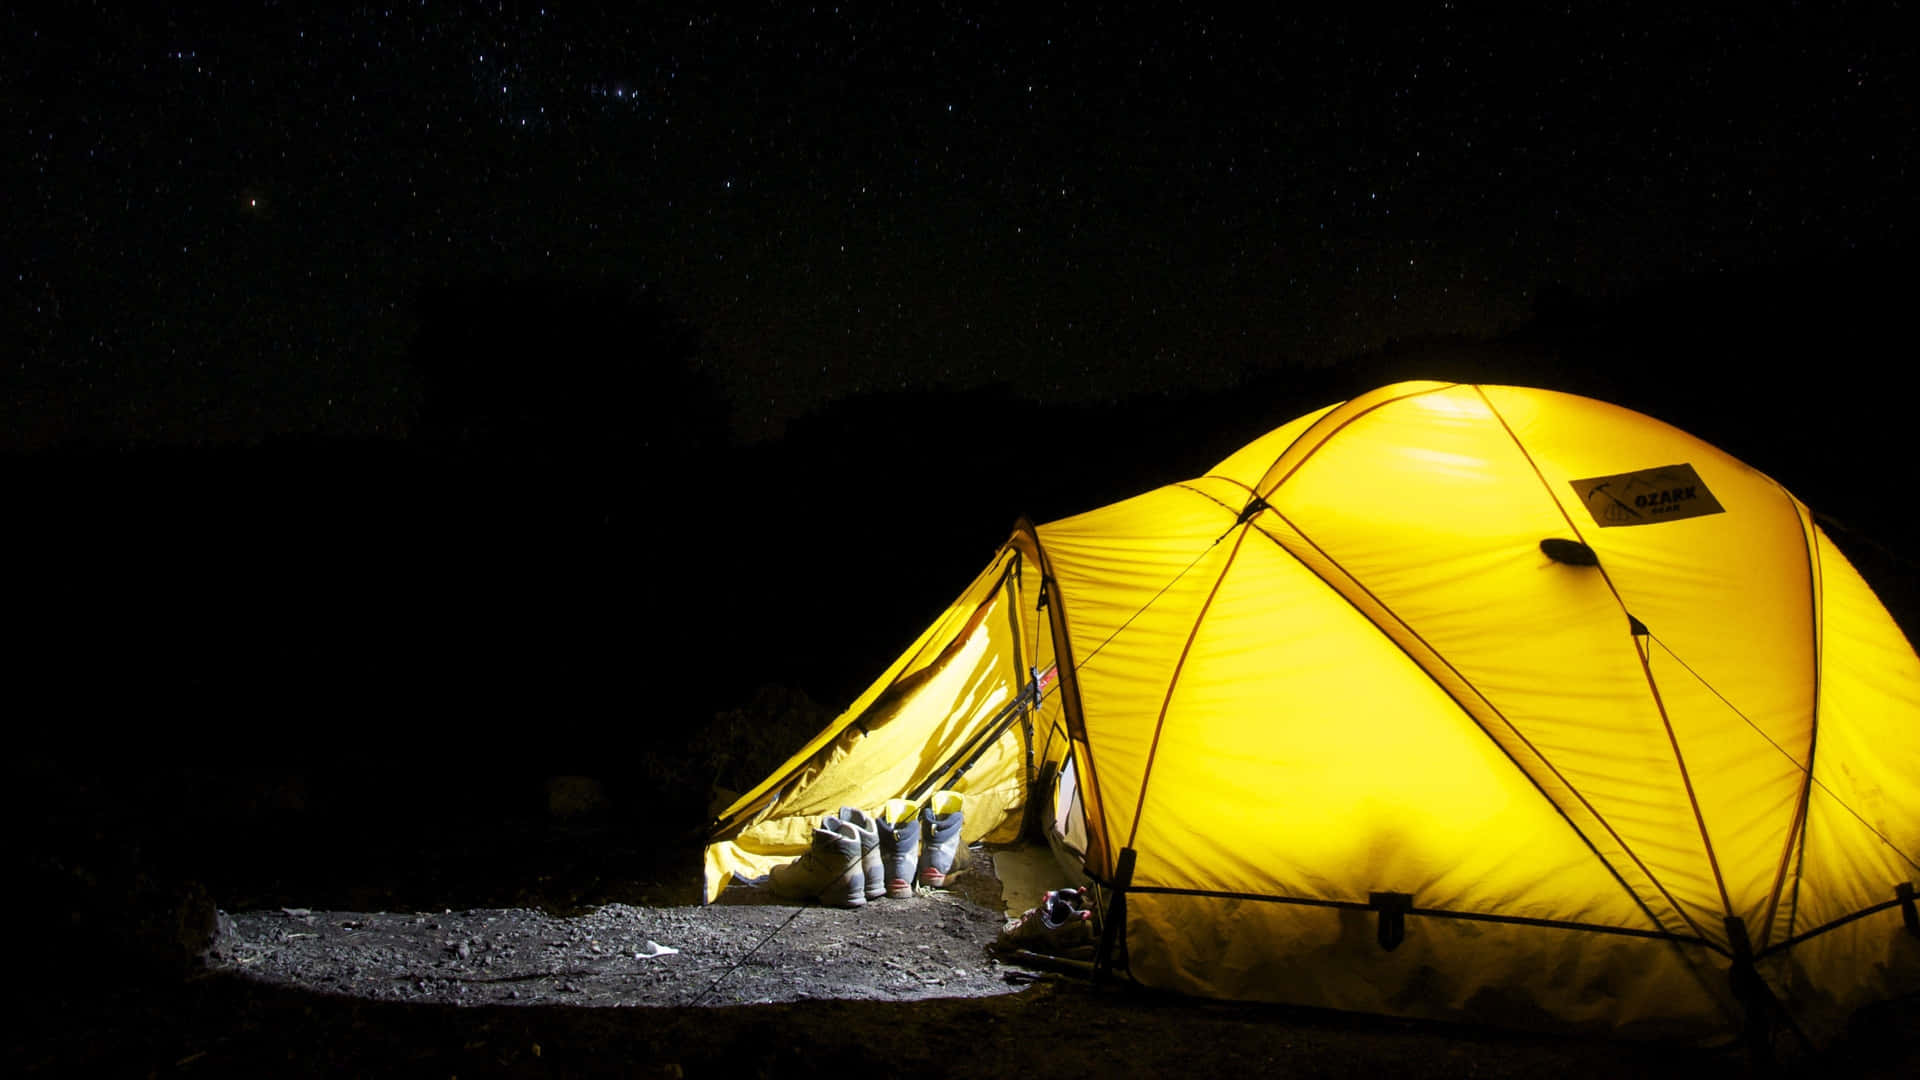 Fondode Pantalla Para Escritorio De Camping En Una Noche Oscura Y Tenebrosa. Fondo de pantalla